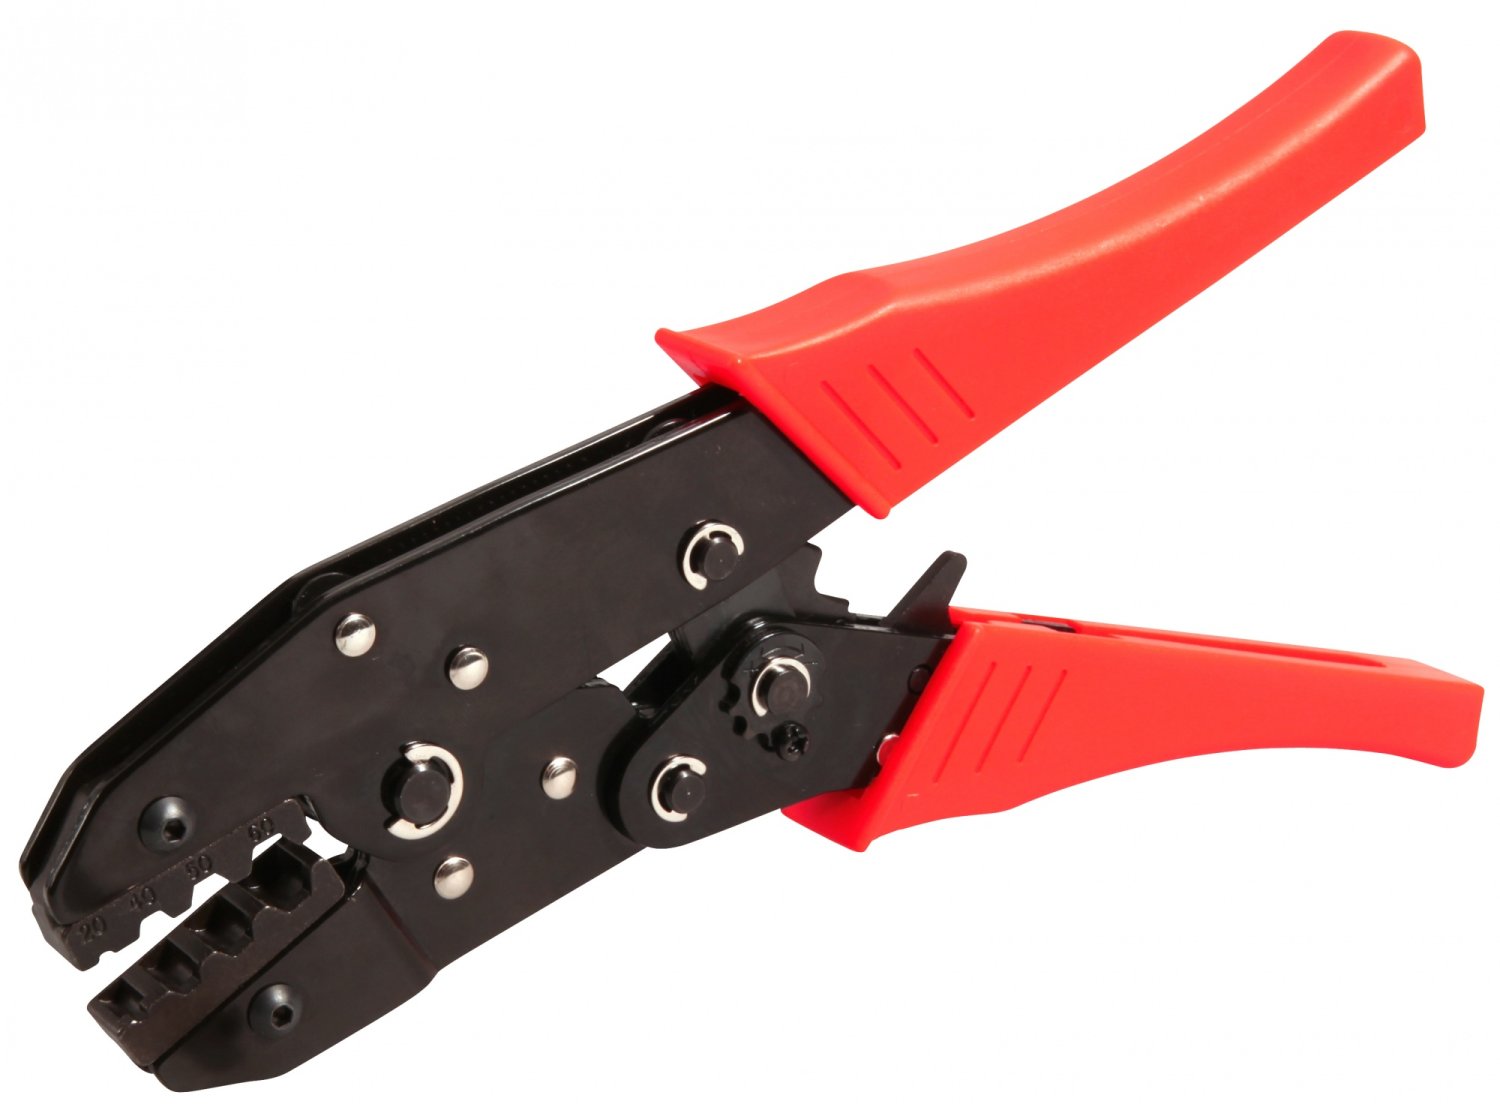 Инструмент многофункциональный ELVEDES для обжимания и троса и рубашки, красный/черный, 2009019 накладка защитная на оболочку троса alhonga hj px008 rd красный alh hj px008 rd